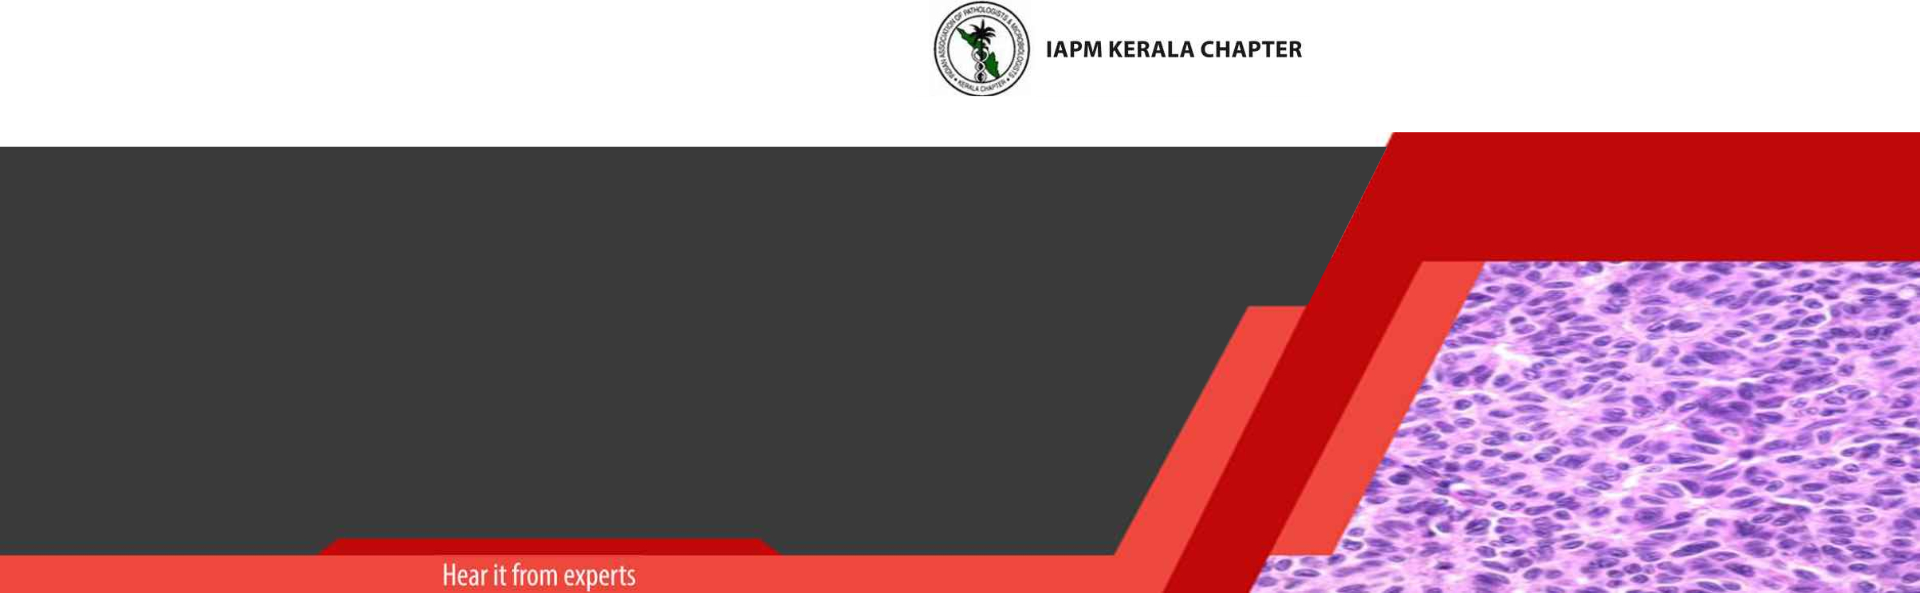 iapm-kerala-chapter-2022-kv-pc